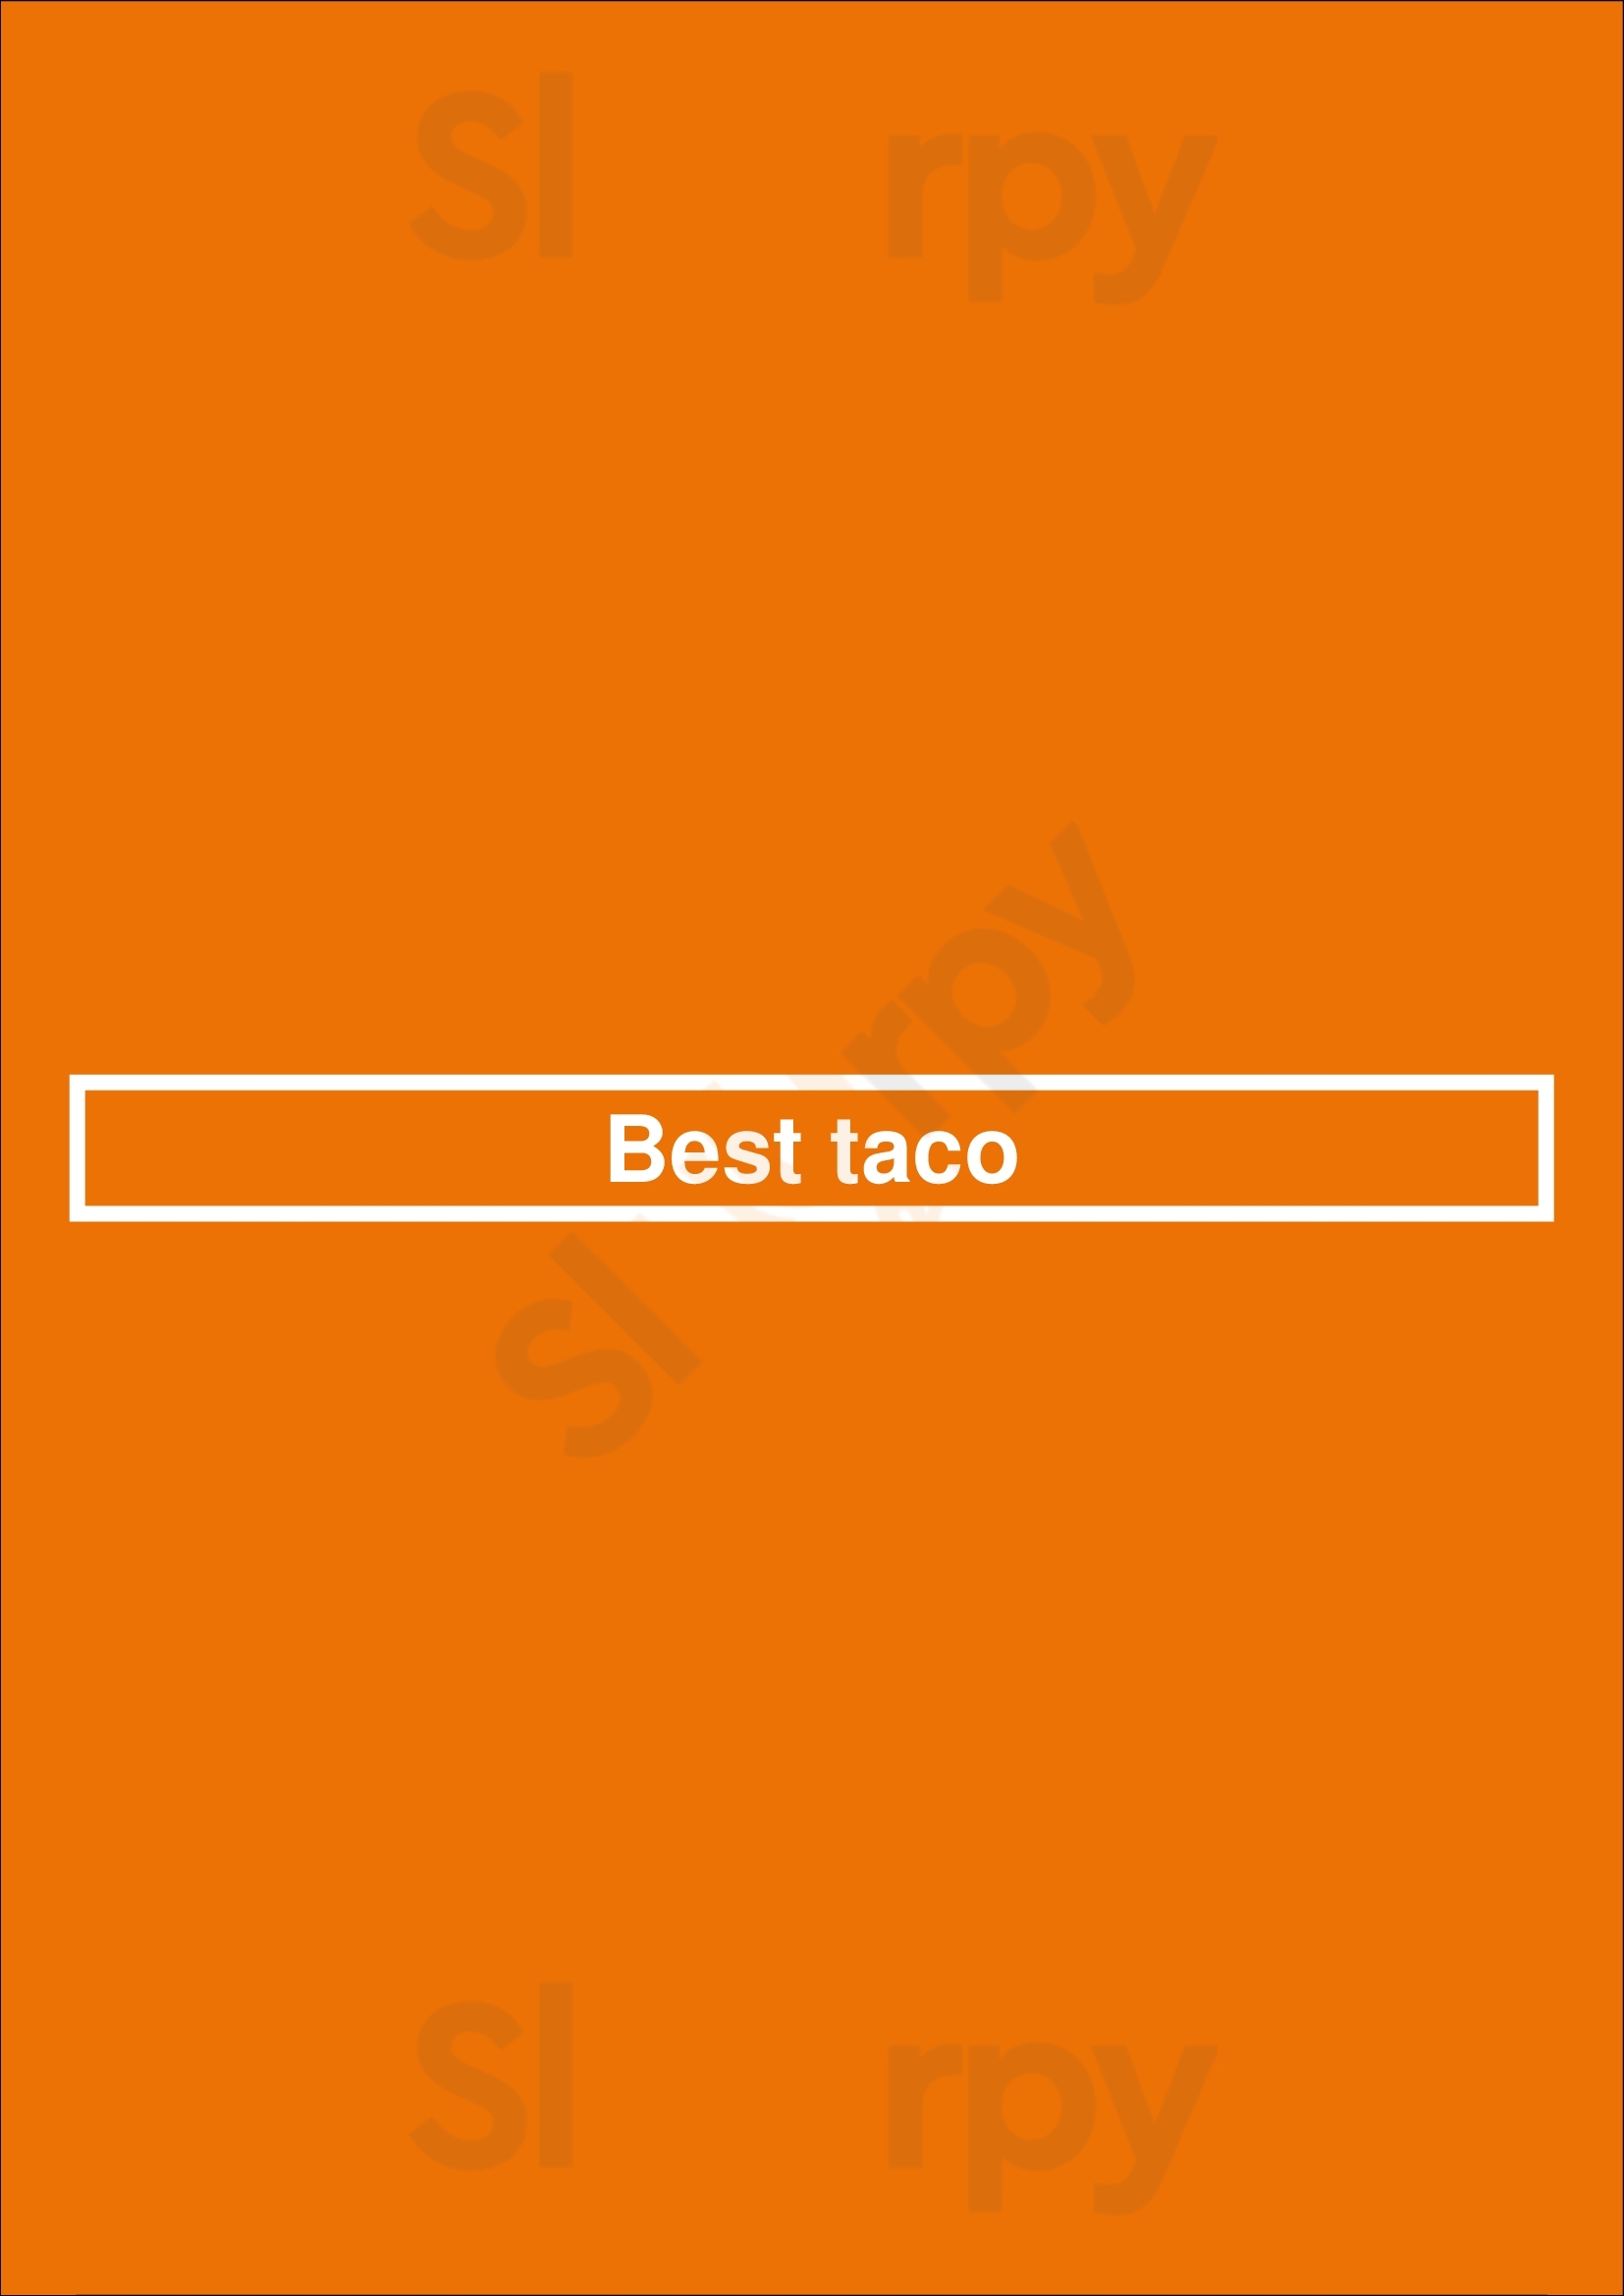 Best Taco Leeds Menu - 1